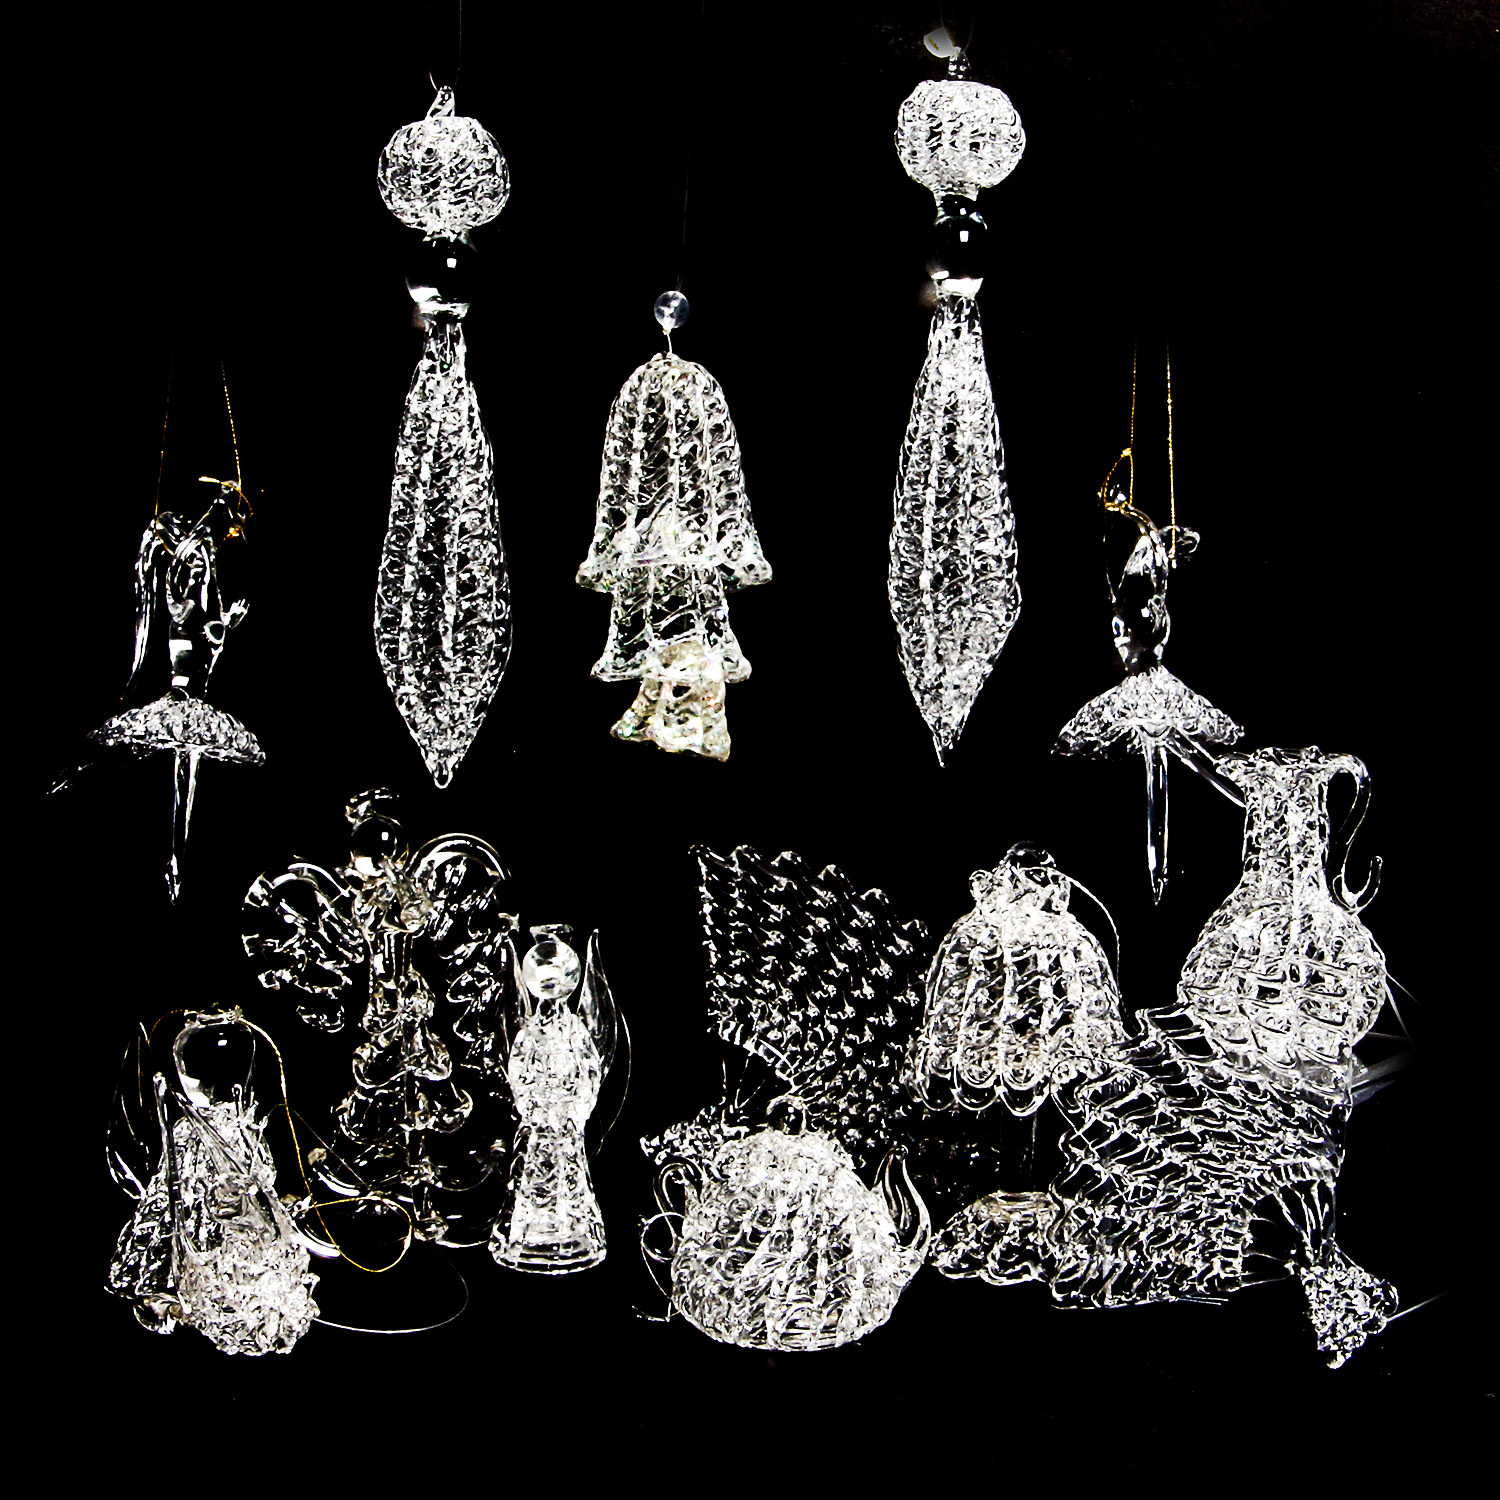 spun glass ornaments